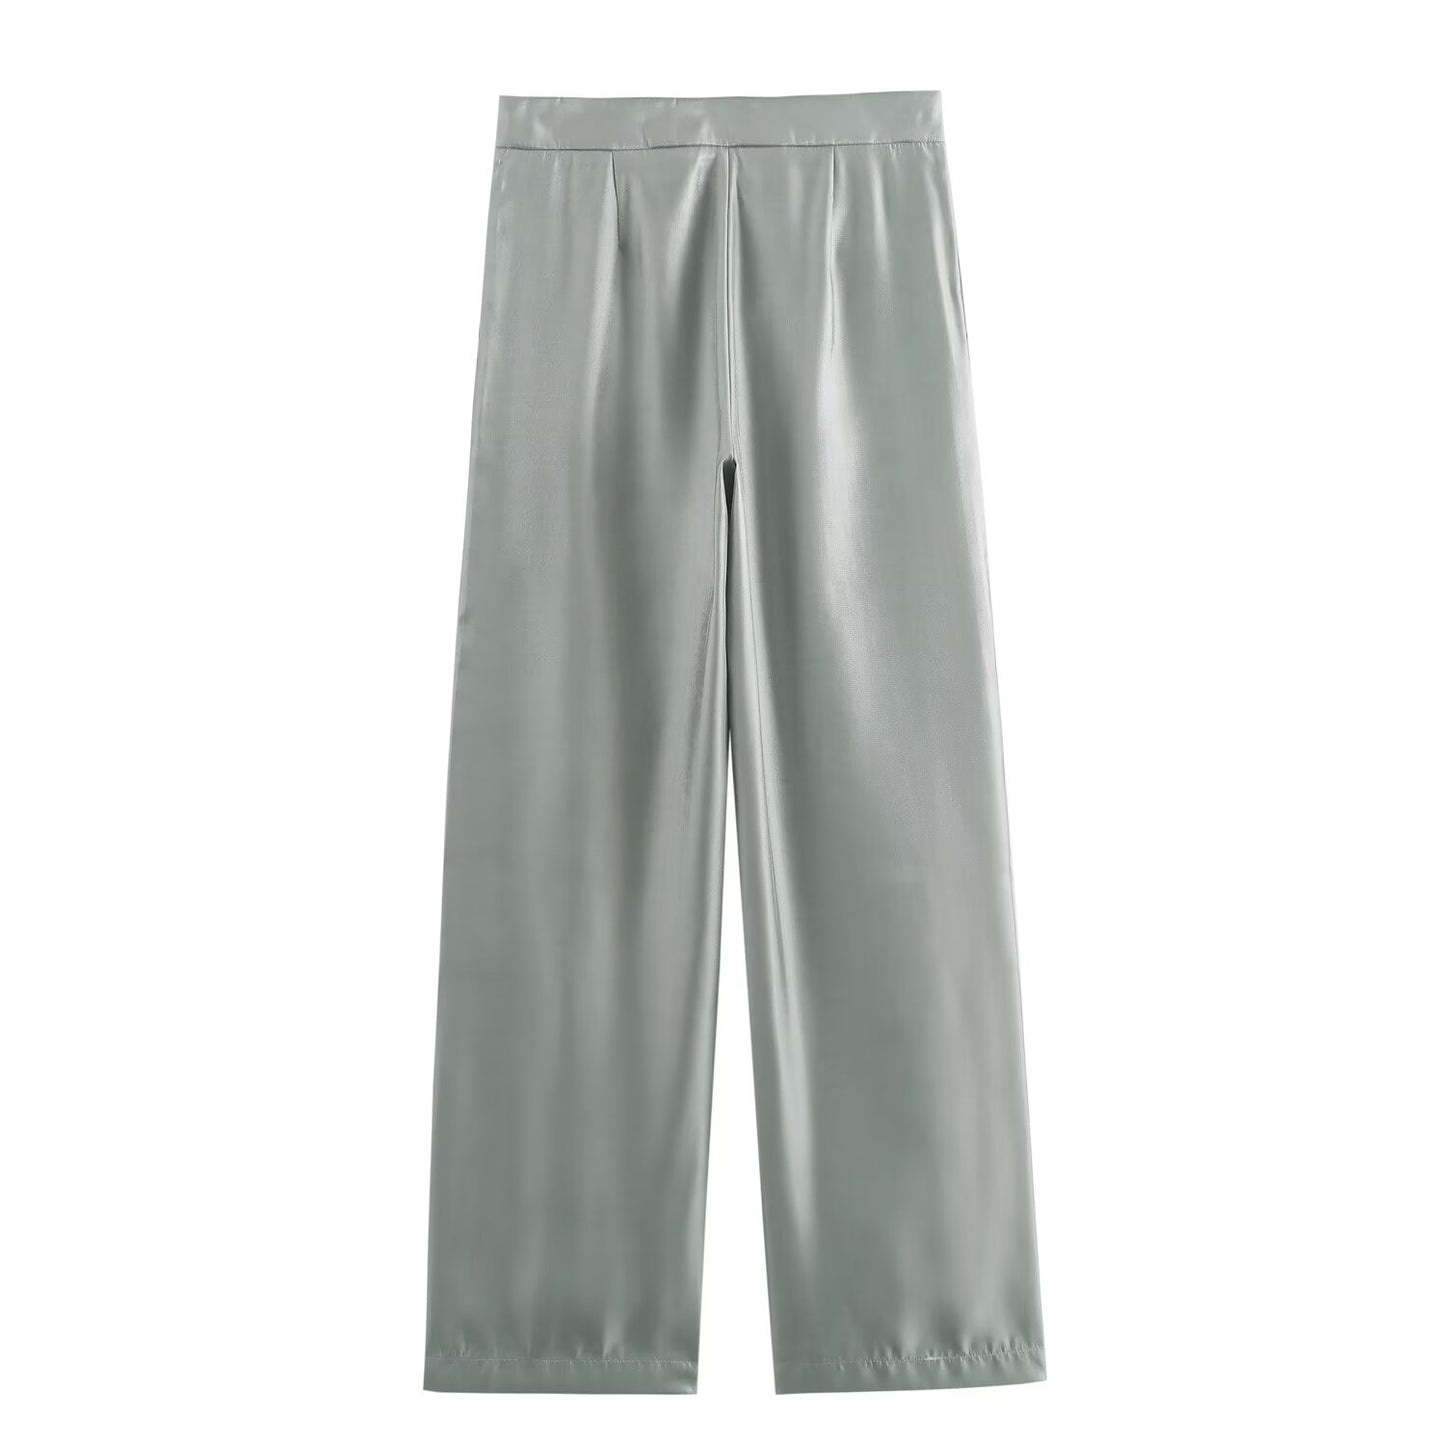 Damenbekleidung Sommer Hochwertige Metallic-Glanz-Lässige Metallic-Hose für Damen Hosen-Sets